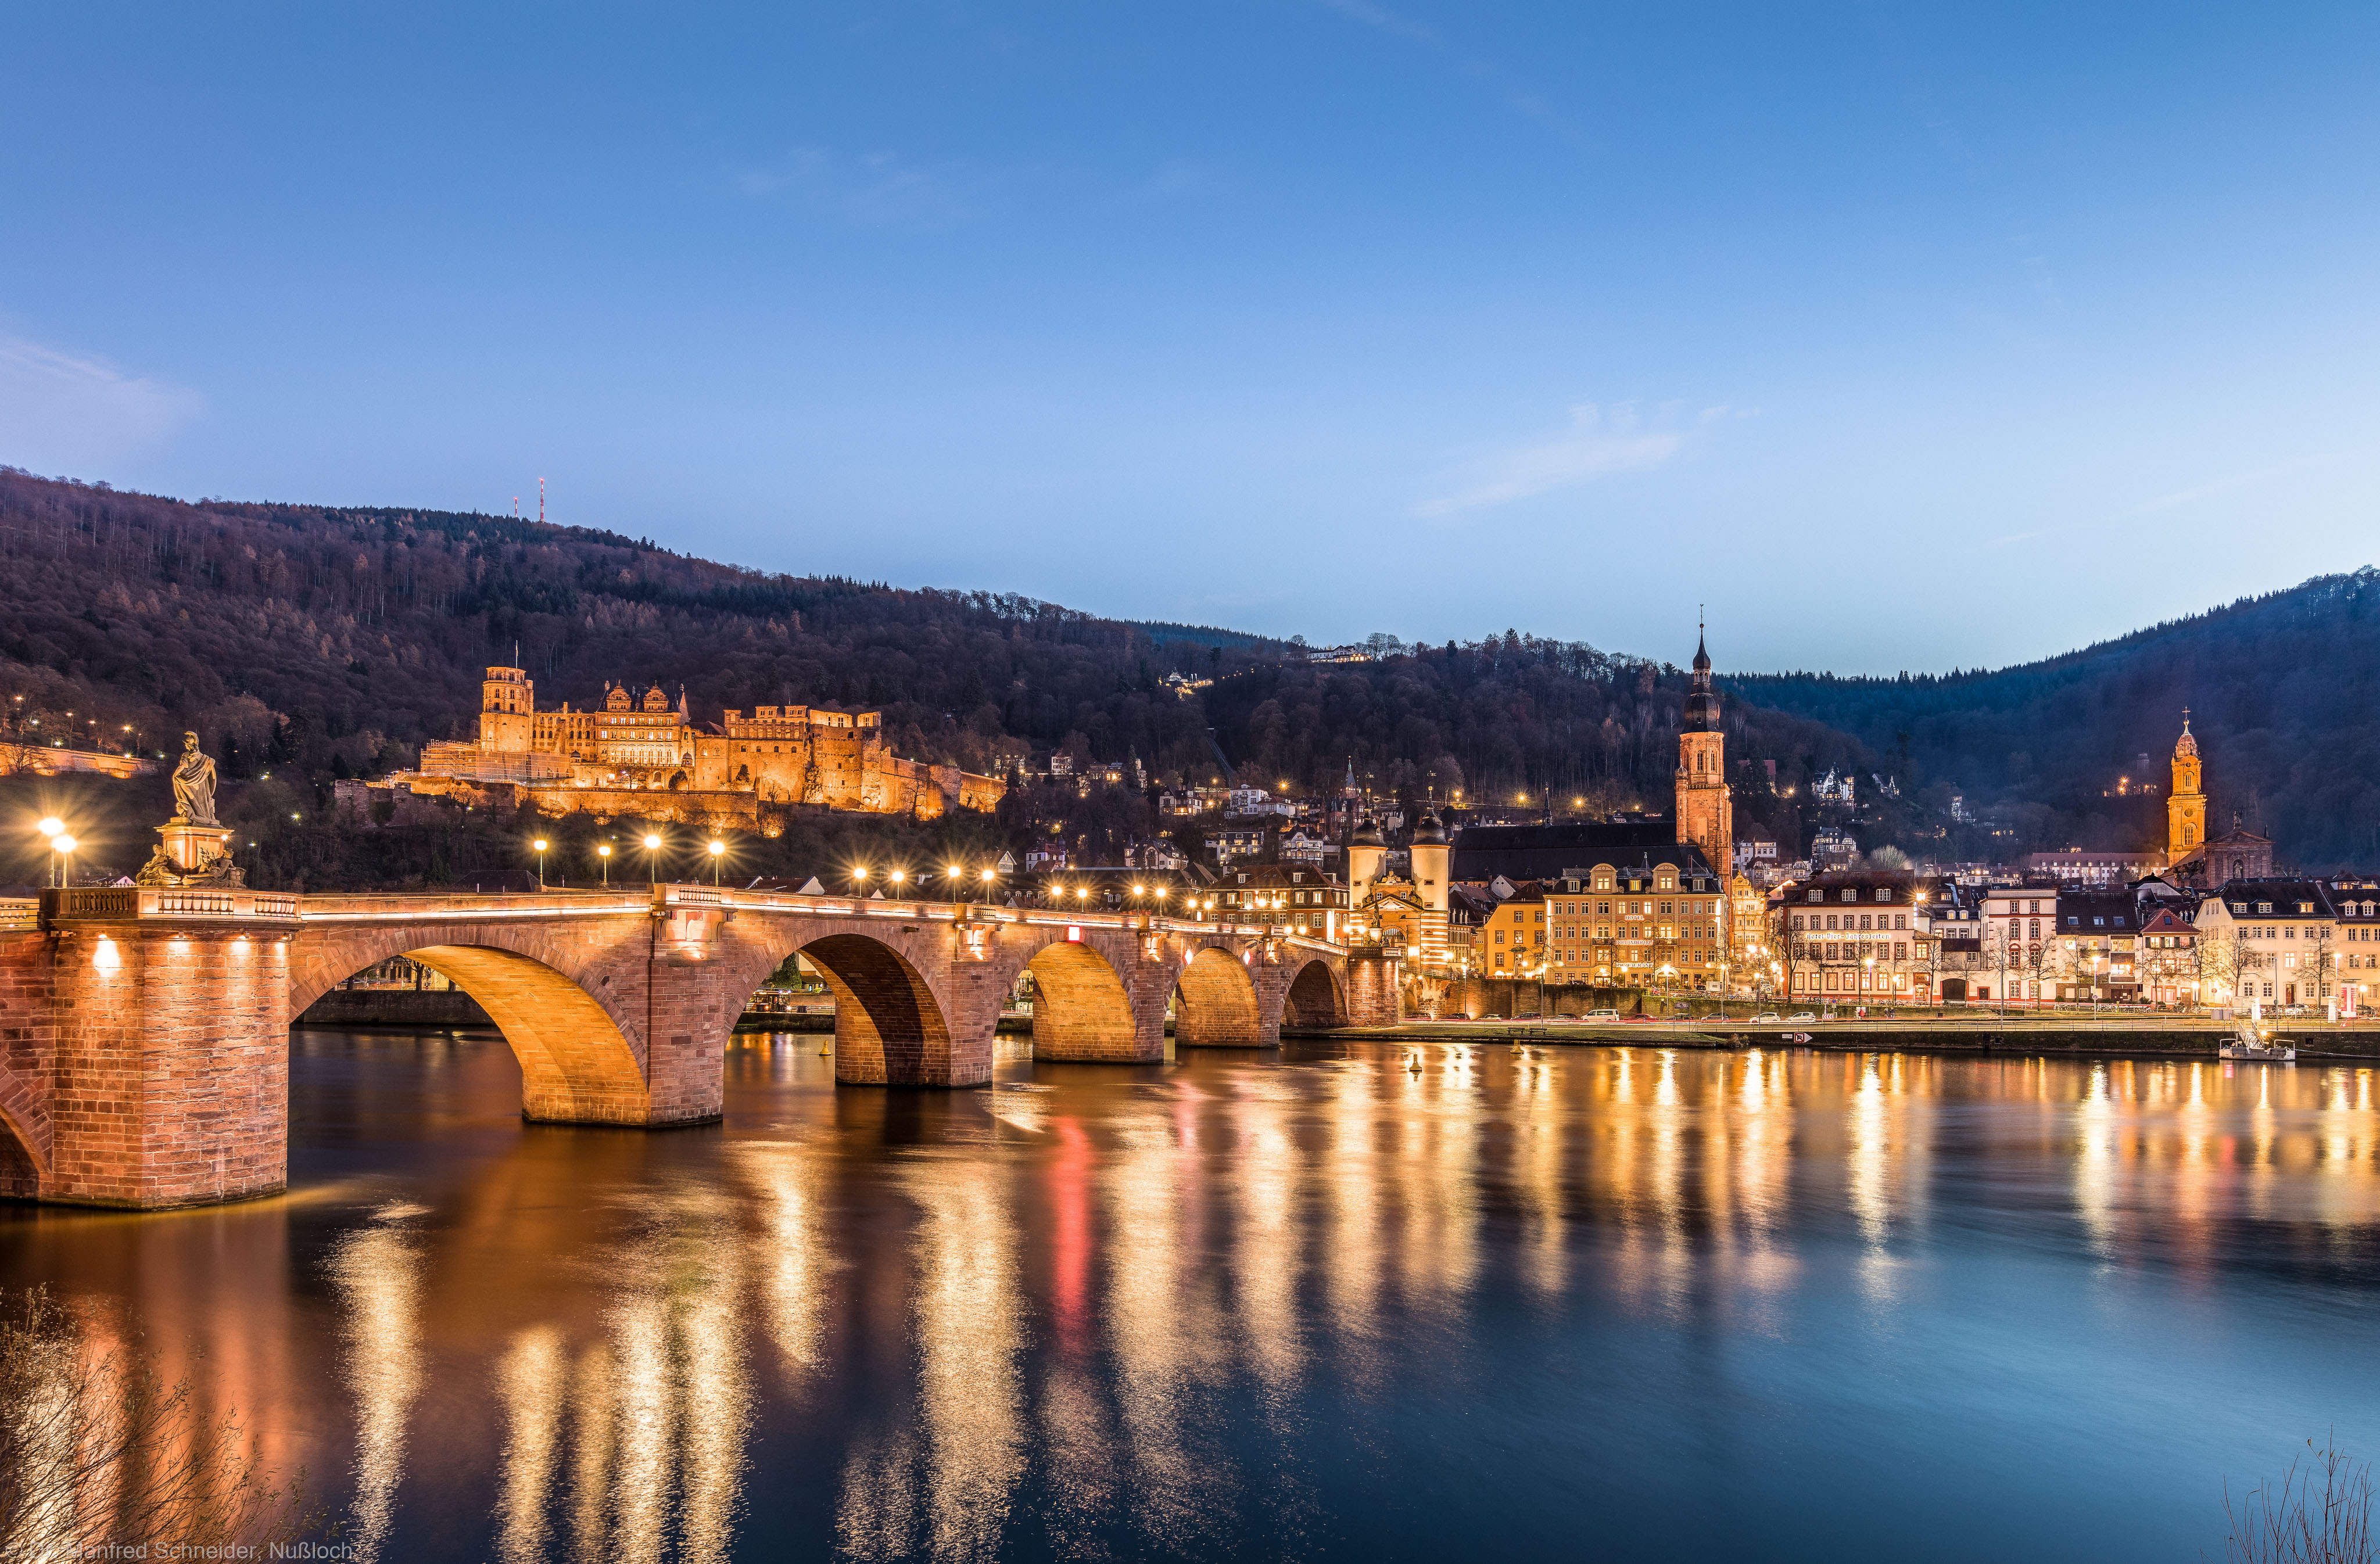 Heidelberg - Heiliggeistkirche - Nordseite - Blick vom nördlichen Neckarufer auf die Altstadt, das Schloss, die Alte Bruecke, die Heiliggeistkirche sowie die Jesuitenkirche (aufgenommen im Dezember 2016, am späten Nachmittag)